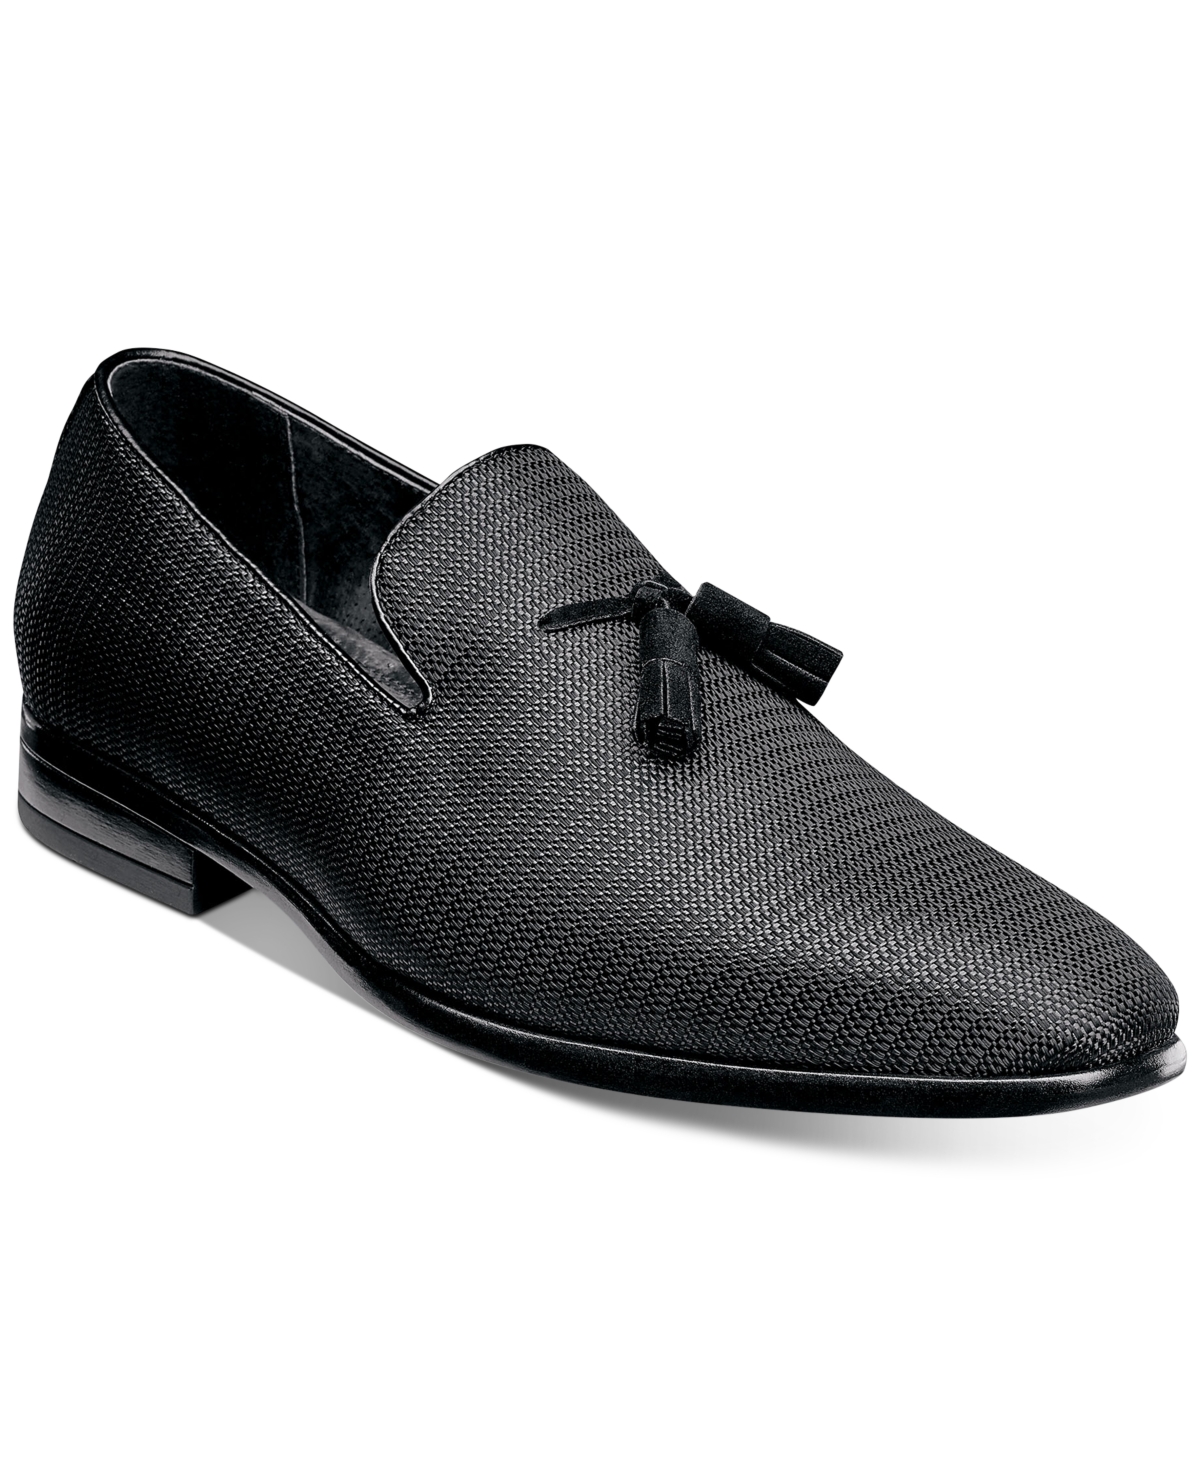 Men's Tazewell Plain Toe Tassel Slip-on Loafer - Black